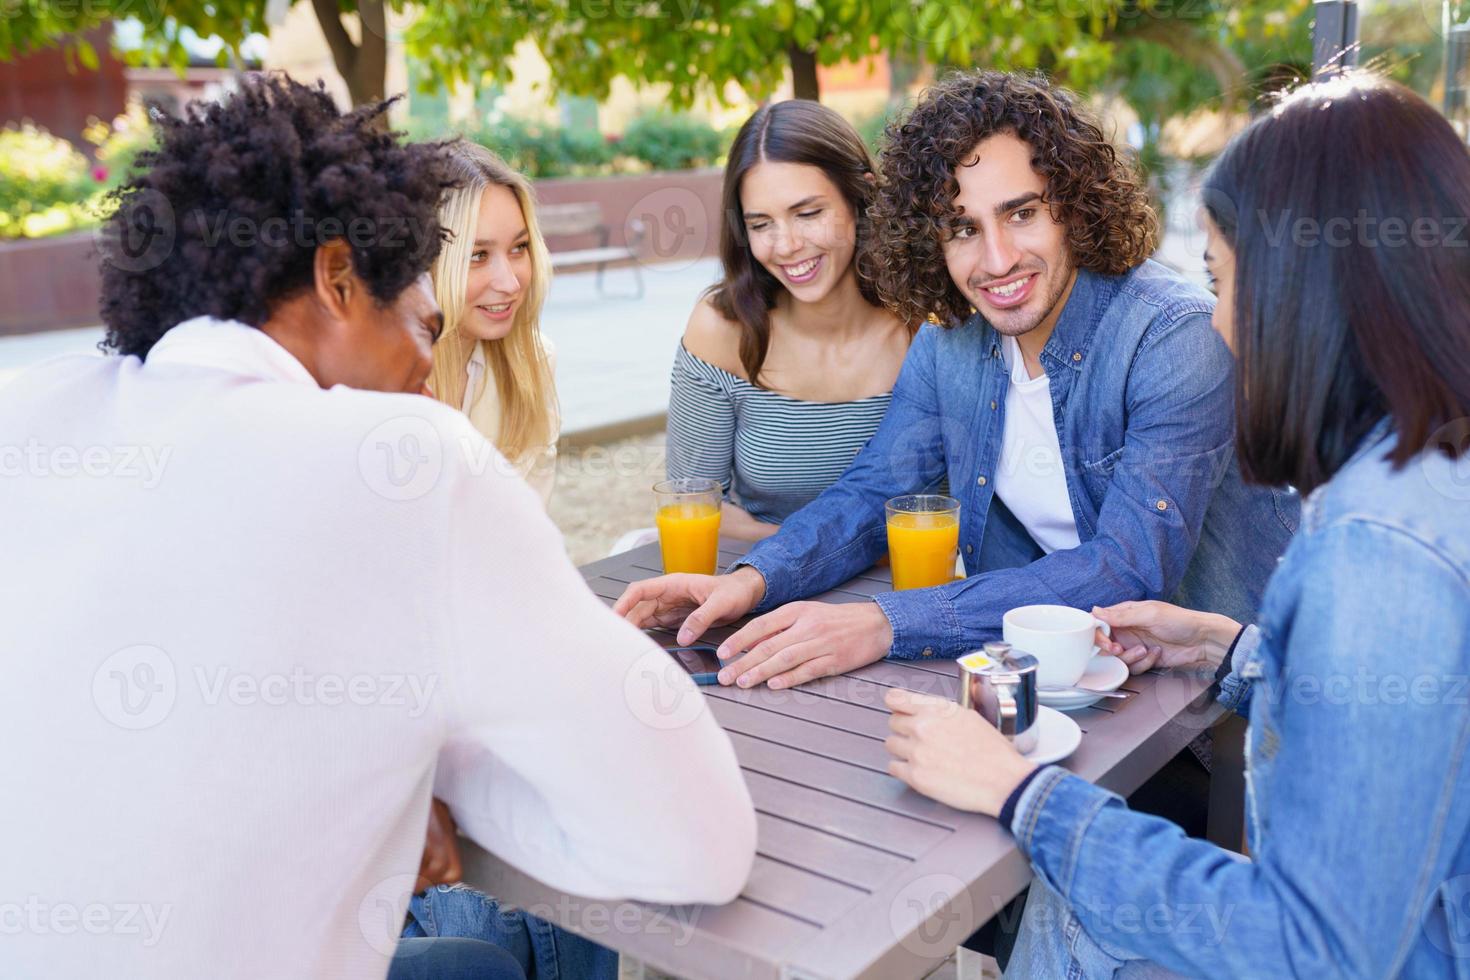 cara mostrando seu smartphone para seu grupo de amigos enquanto bebe em um bar ao ar livre foto